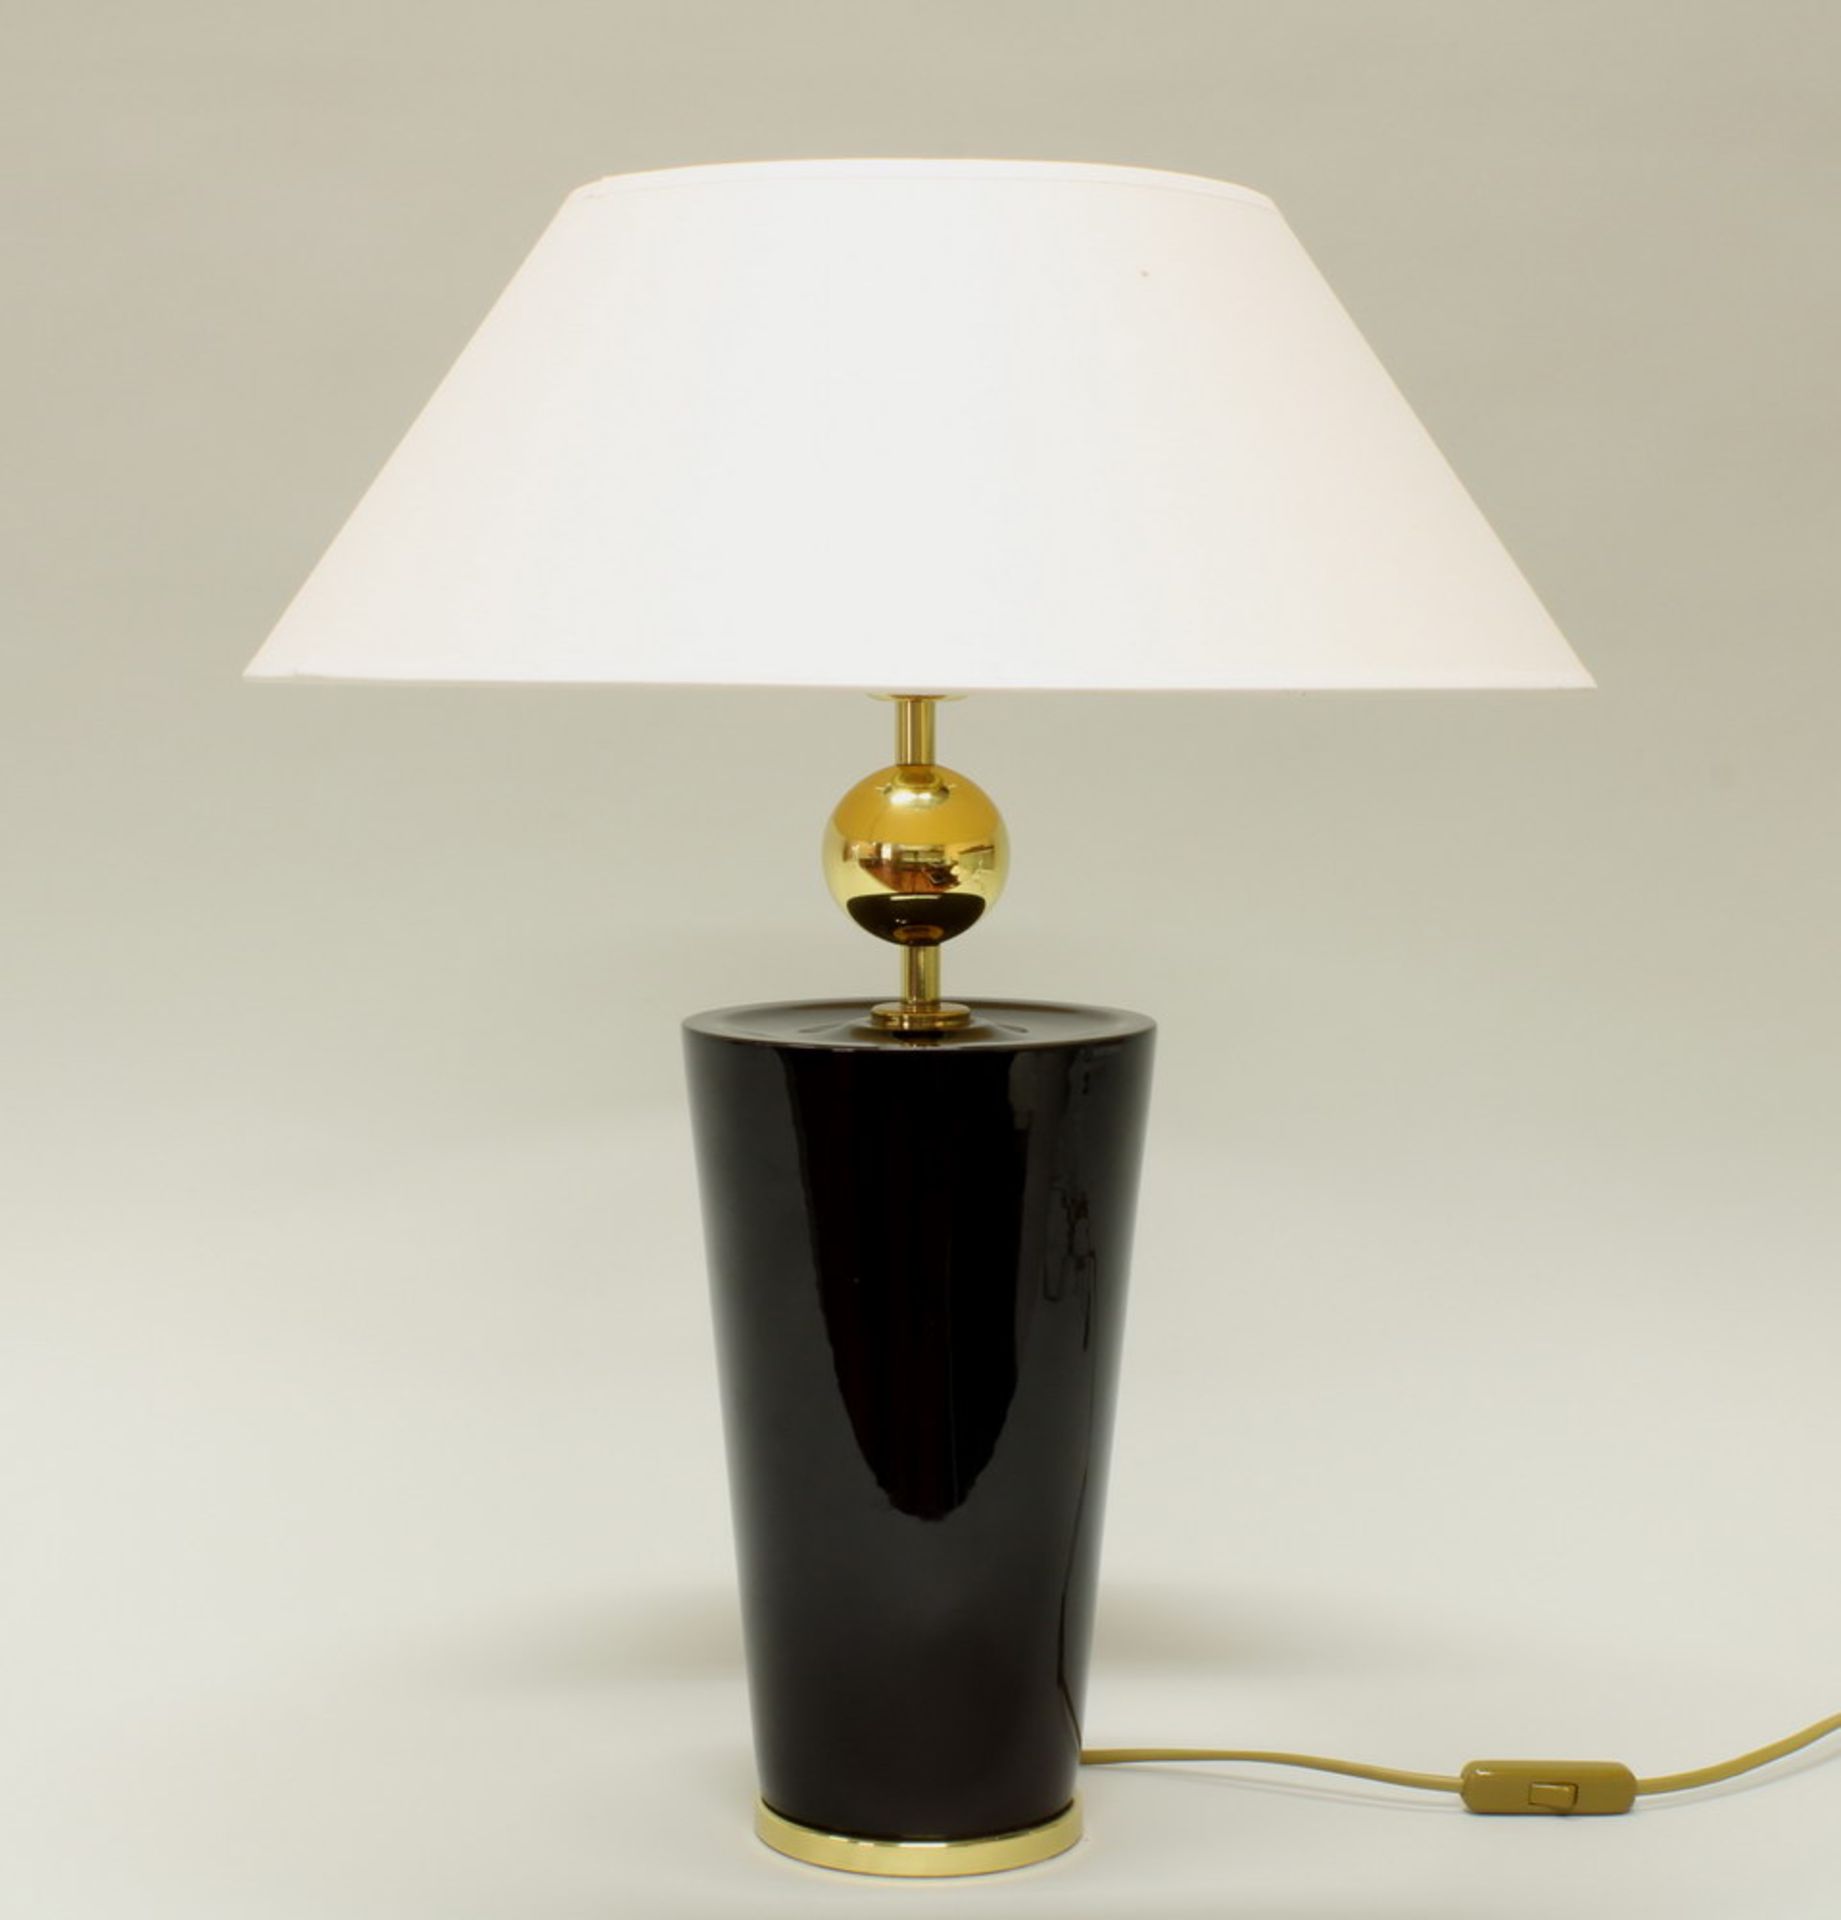 Tischlampe, modern, Porzellan, Metall, schwarz-gold, konisch, einflammig, elektrifiziert, heller - Image 2 of 2